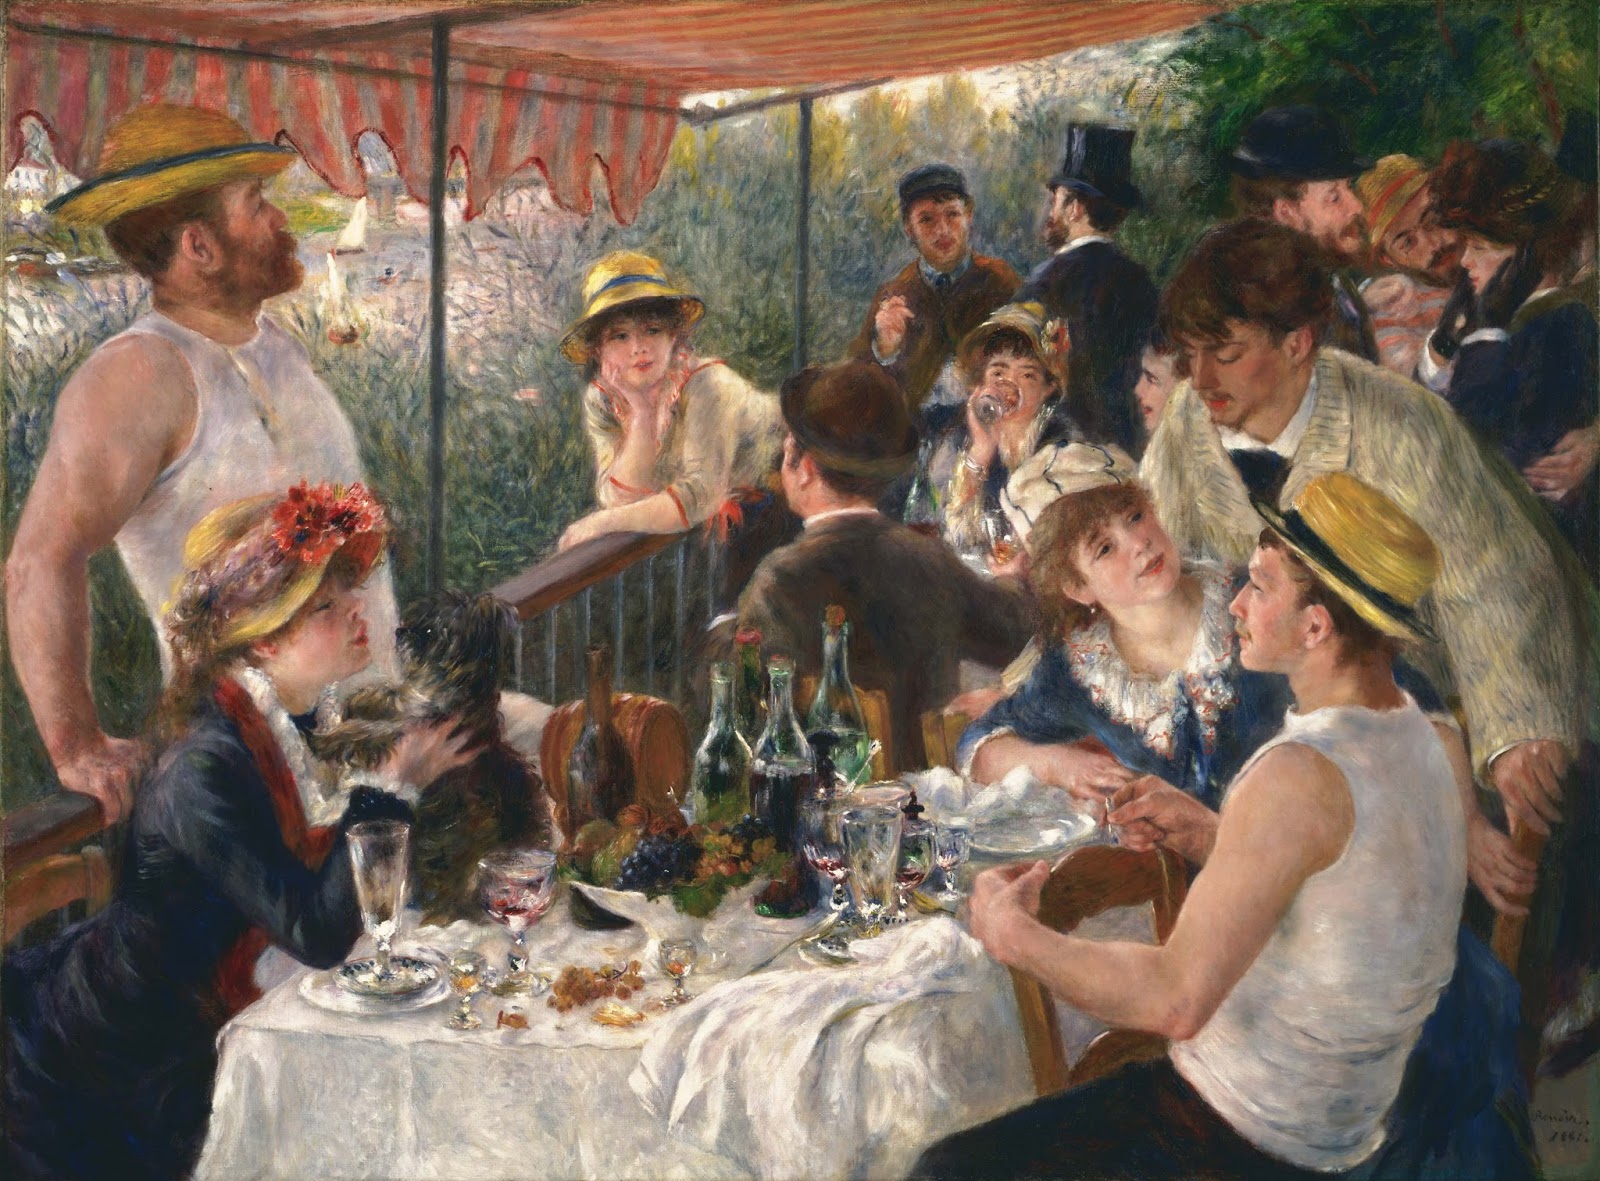 Pierre+Auguste+Renoir-1841-1-19 (559).jpg